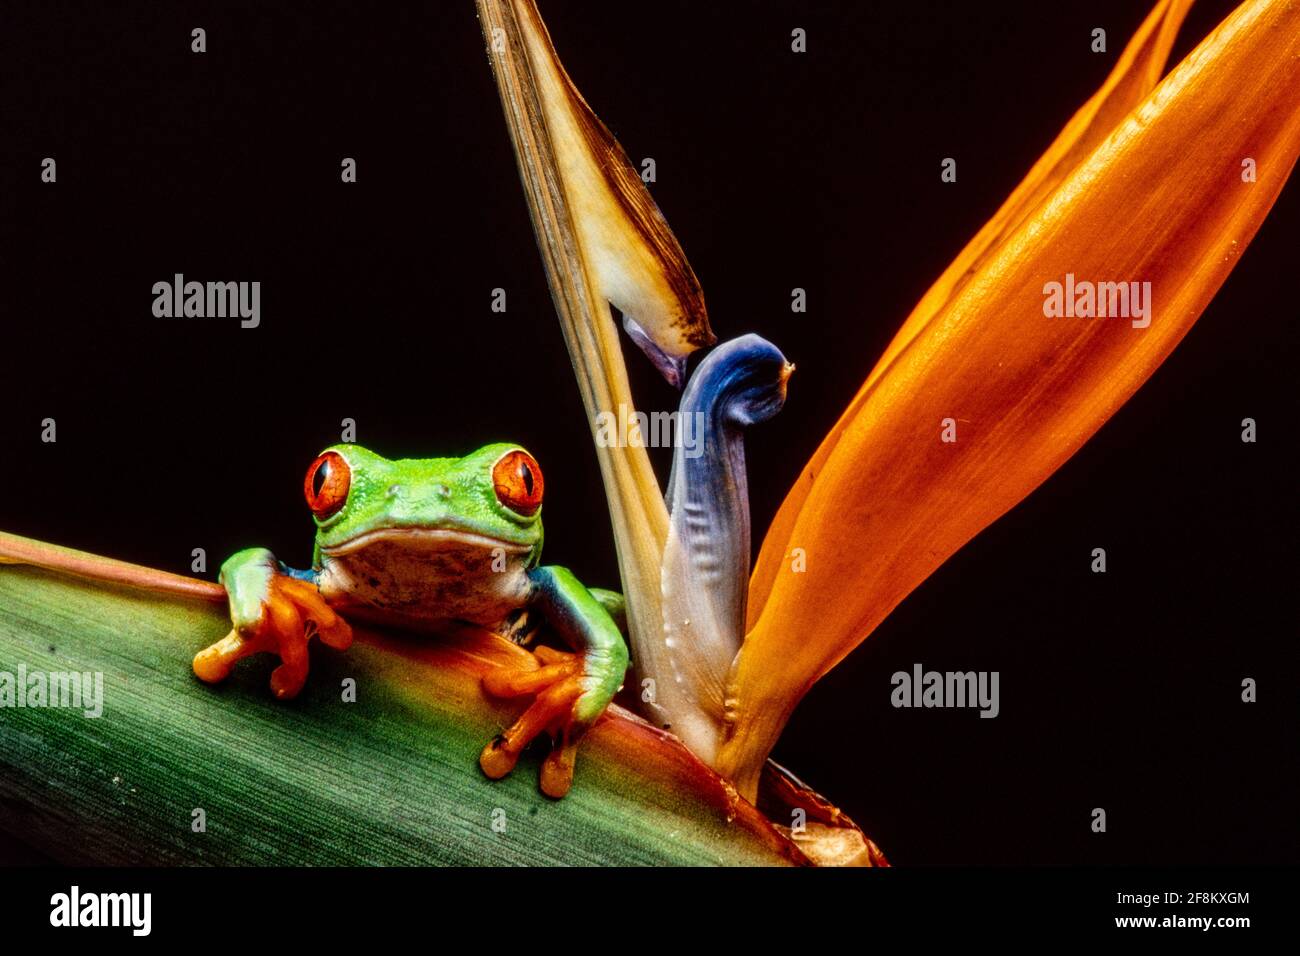 Une grenouille à yeux rouges, Agalychnis callidryas, grimpant sur une plante Bird of Paradise. Ces grenouilles sont principalement nocturnes, dormant pendant la journée. Banque D'Images